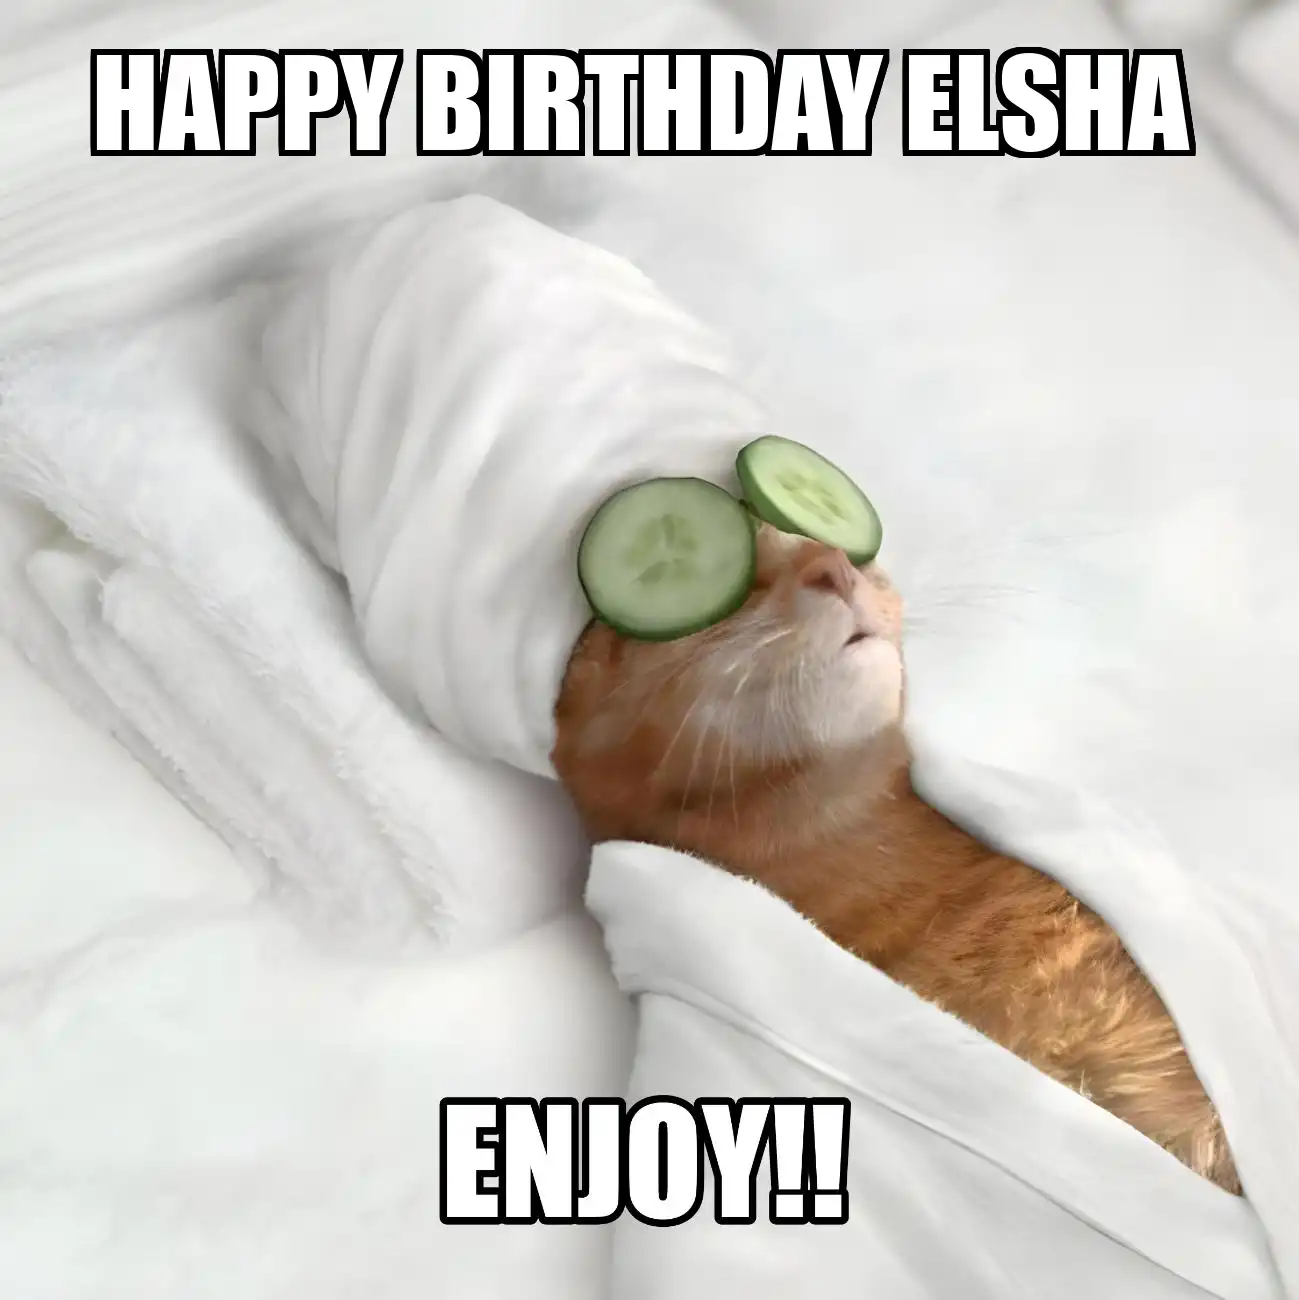 Happy Birthday Elsha Enjoy Cat Meme